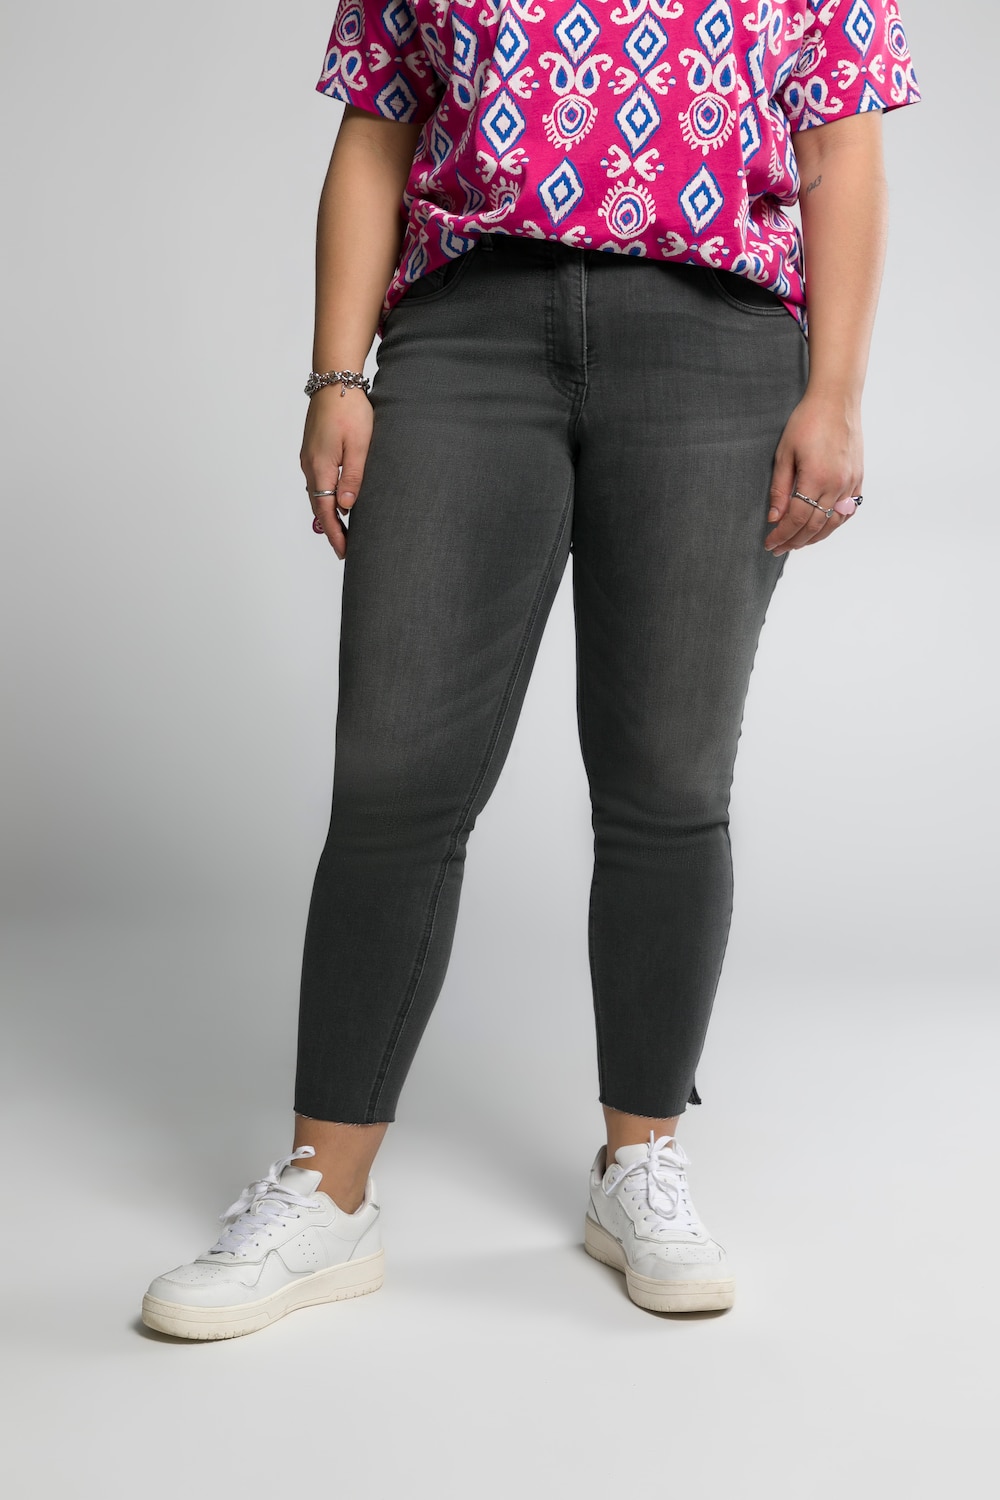 Grote Maten skinny jeans, Dames, grijs, Maat: 56, Katoen/Polyester, Studio Untold